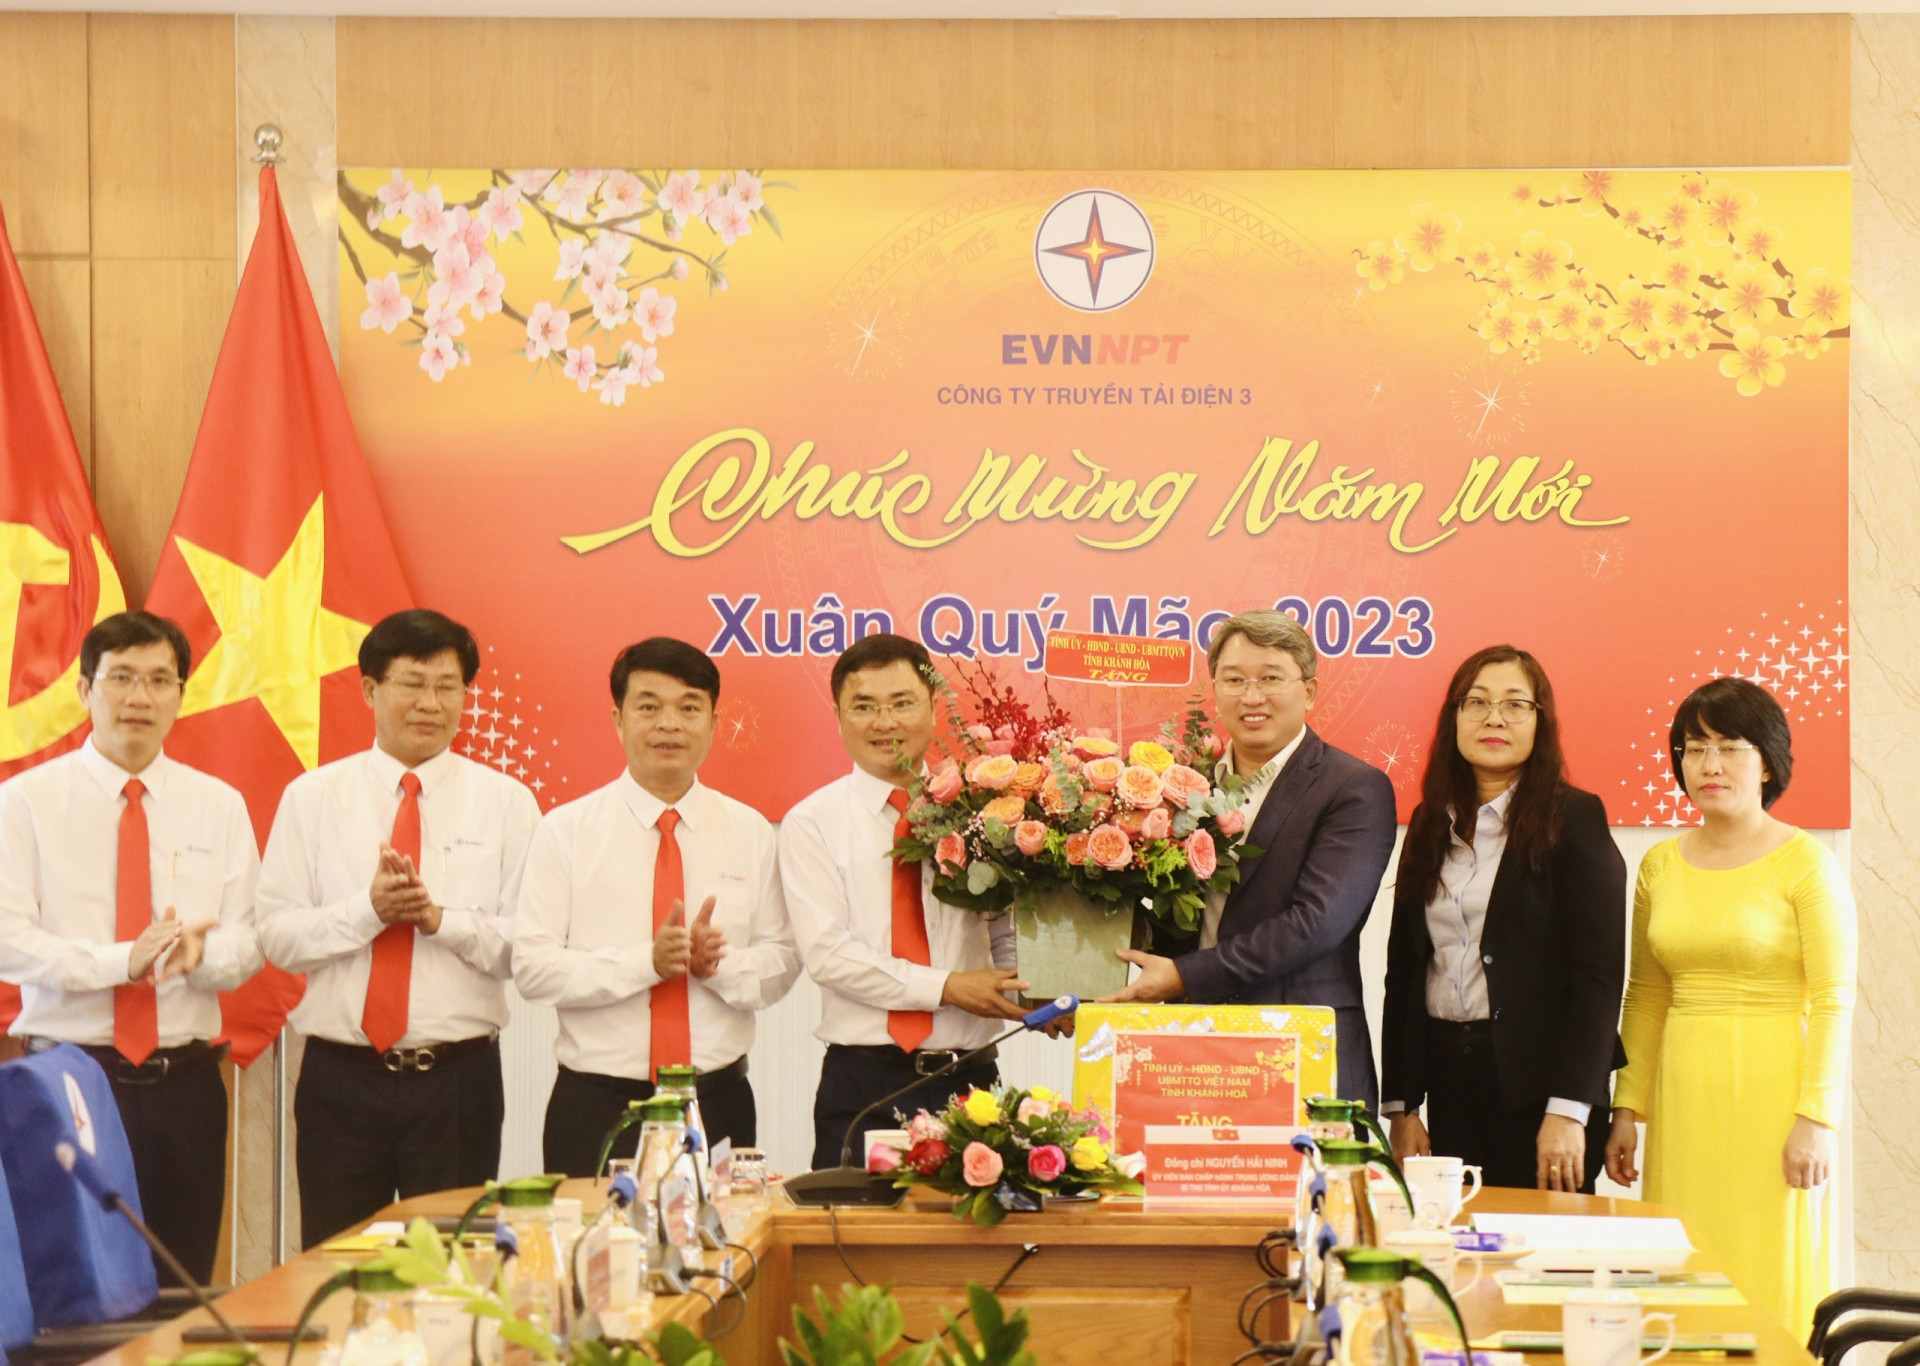 Bí thư Tỉnh ủy Nguyễn Hải Ninh tặng hoa, quà cho cán bộ, nhân viên Công ty Truyền tải Điện 3